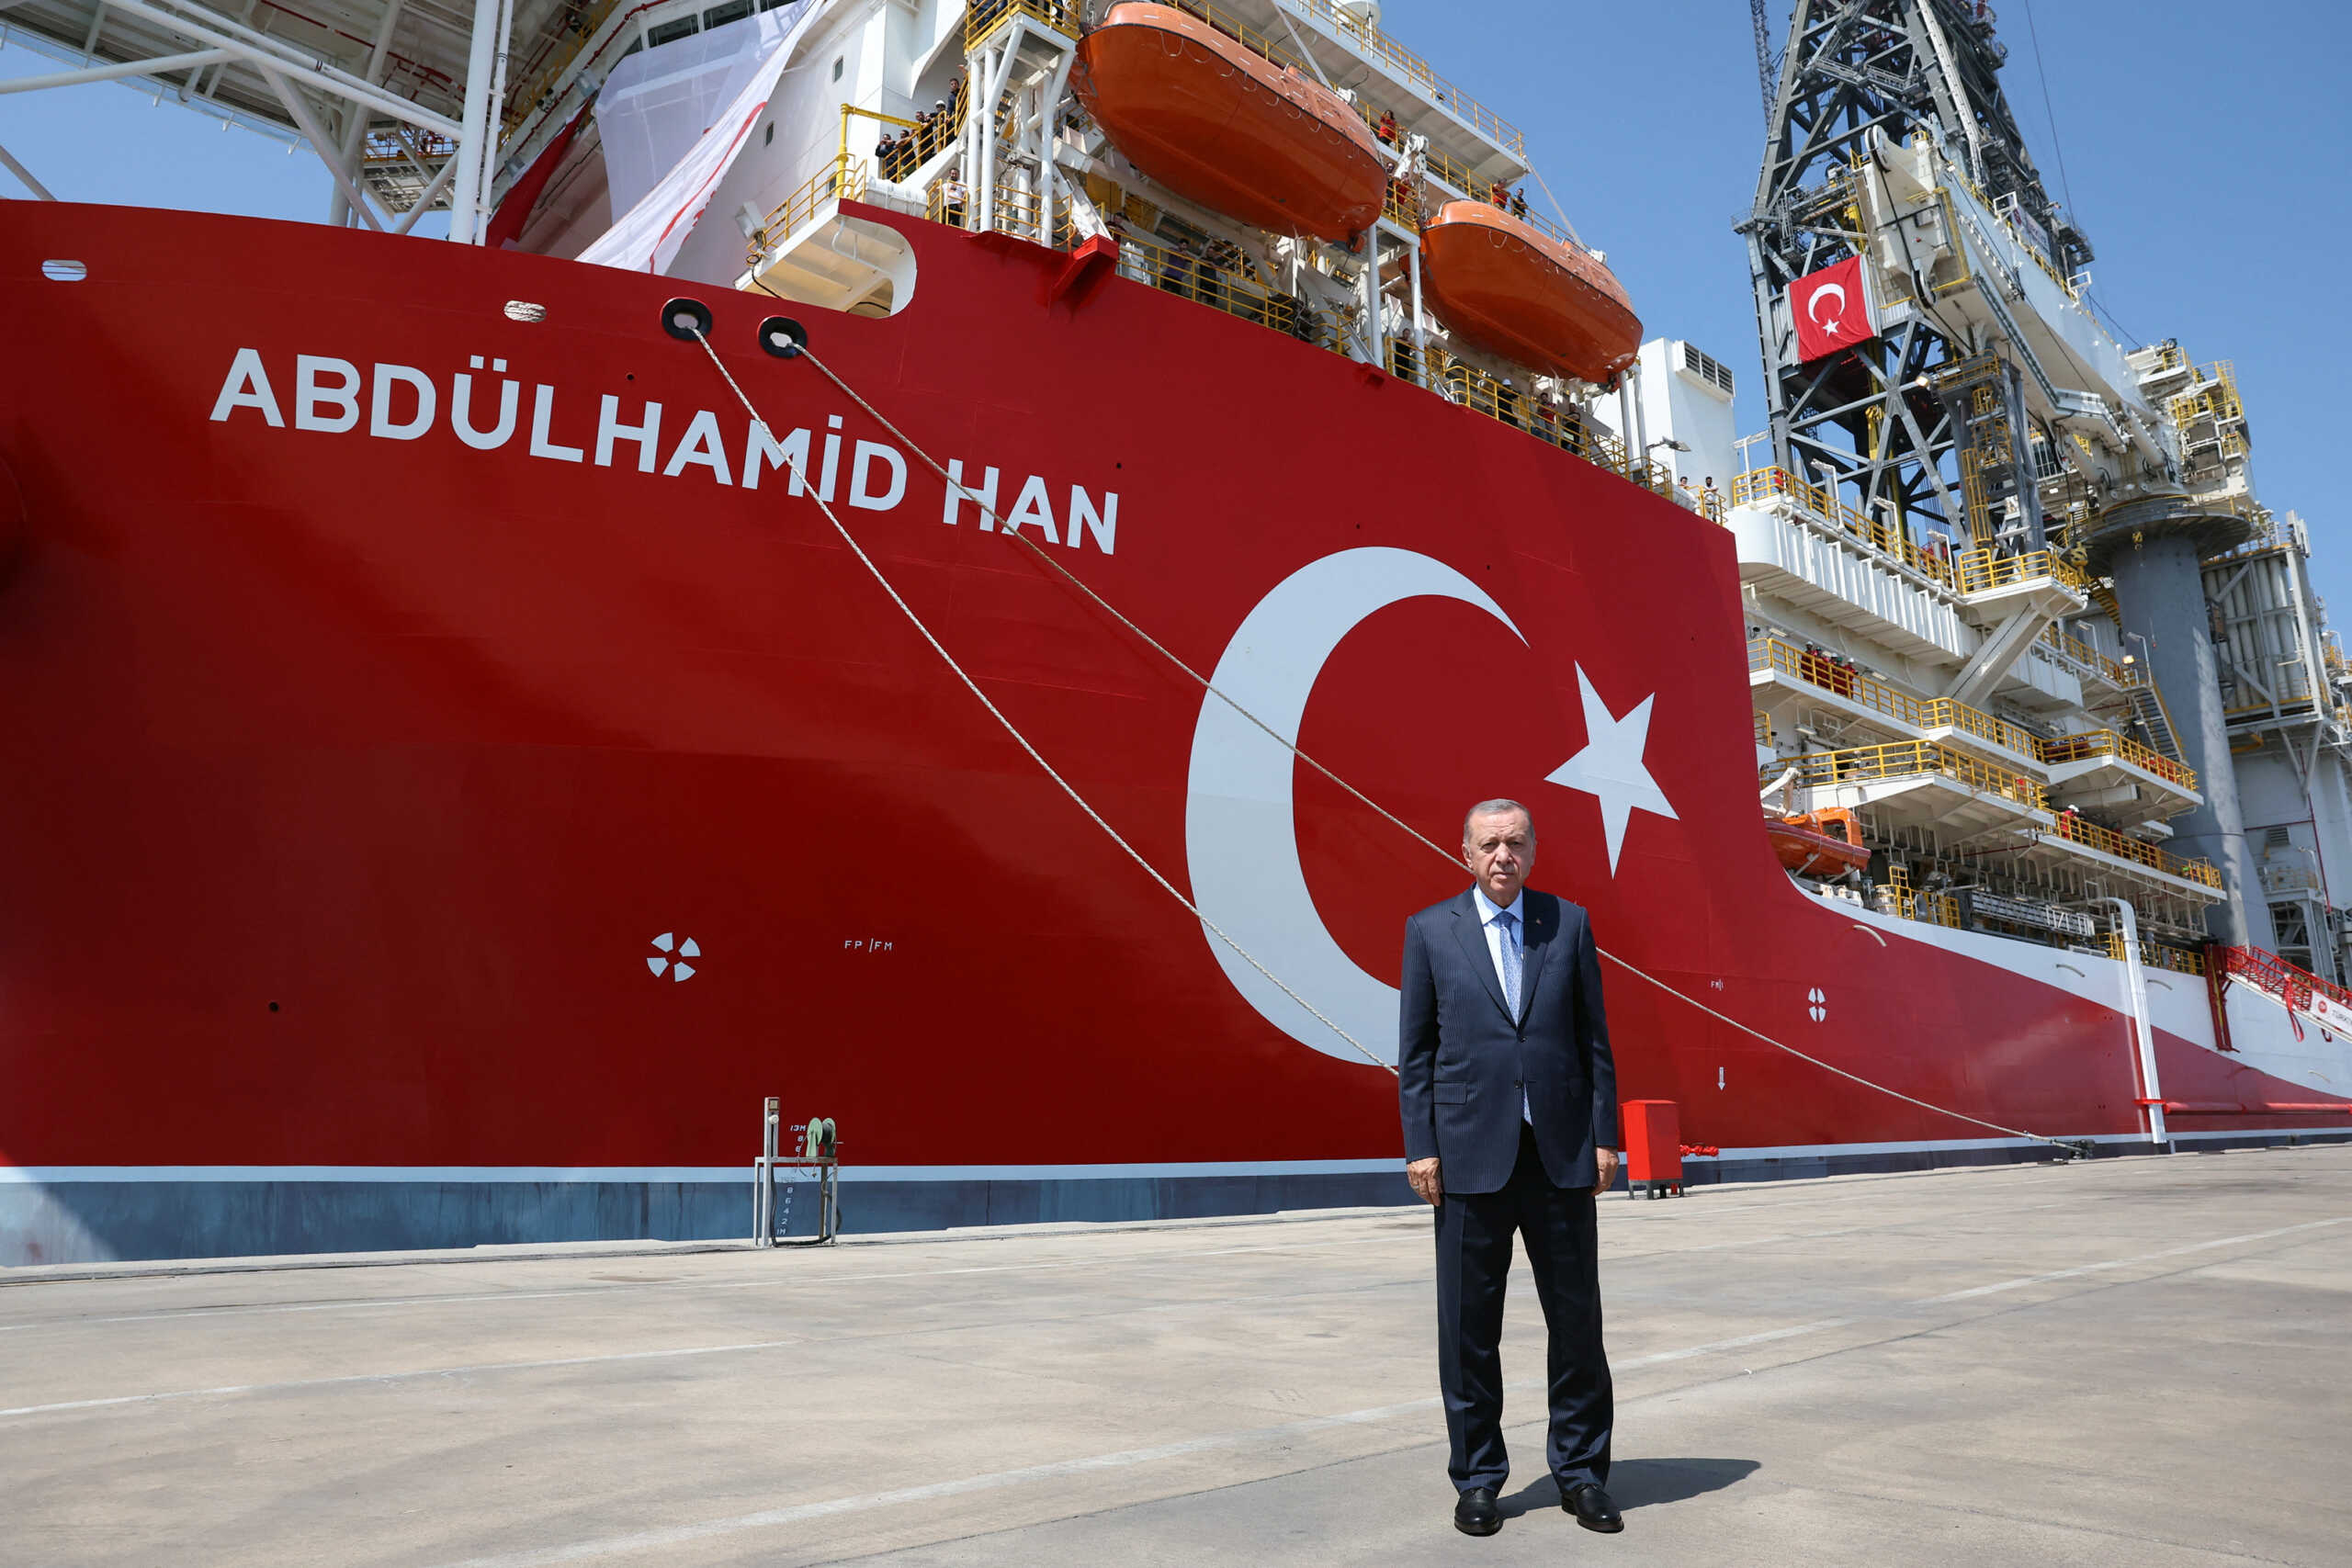 Ταγίπ Ερντογάν: Το «Abdulhamid Han» σύμβολο των δικαιωμάτων μας στη Μεσόγειο